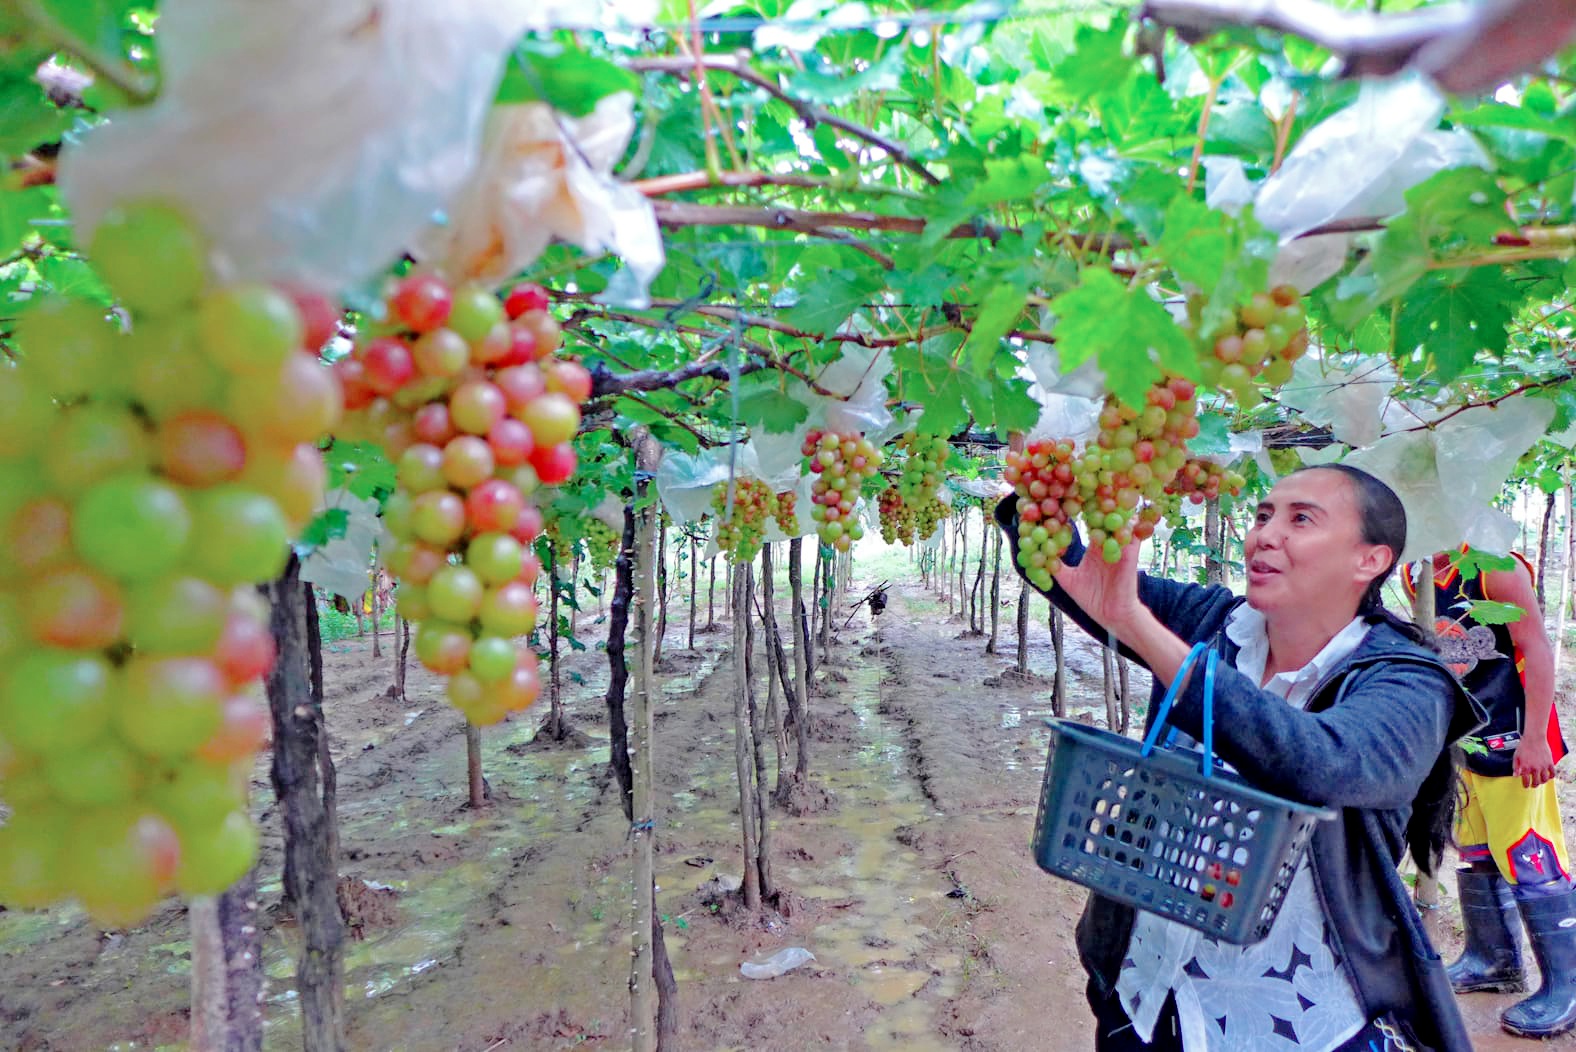 In La Union, farmers let tourists pick grapes